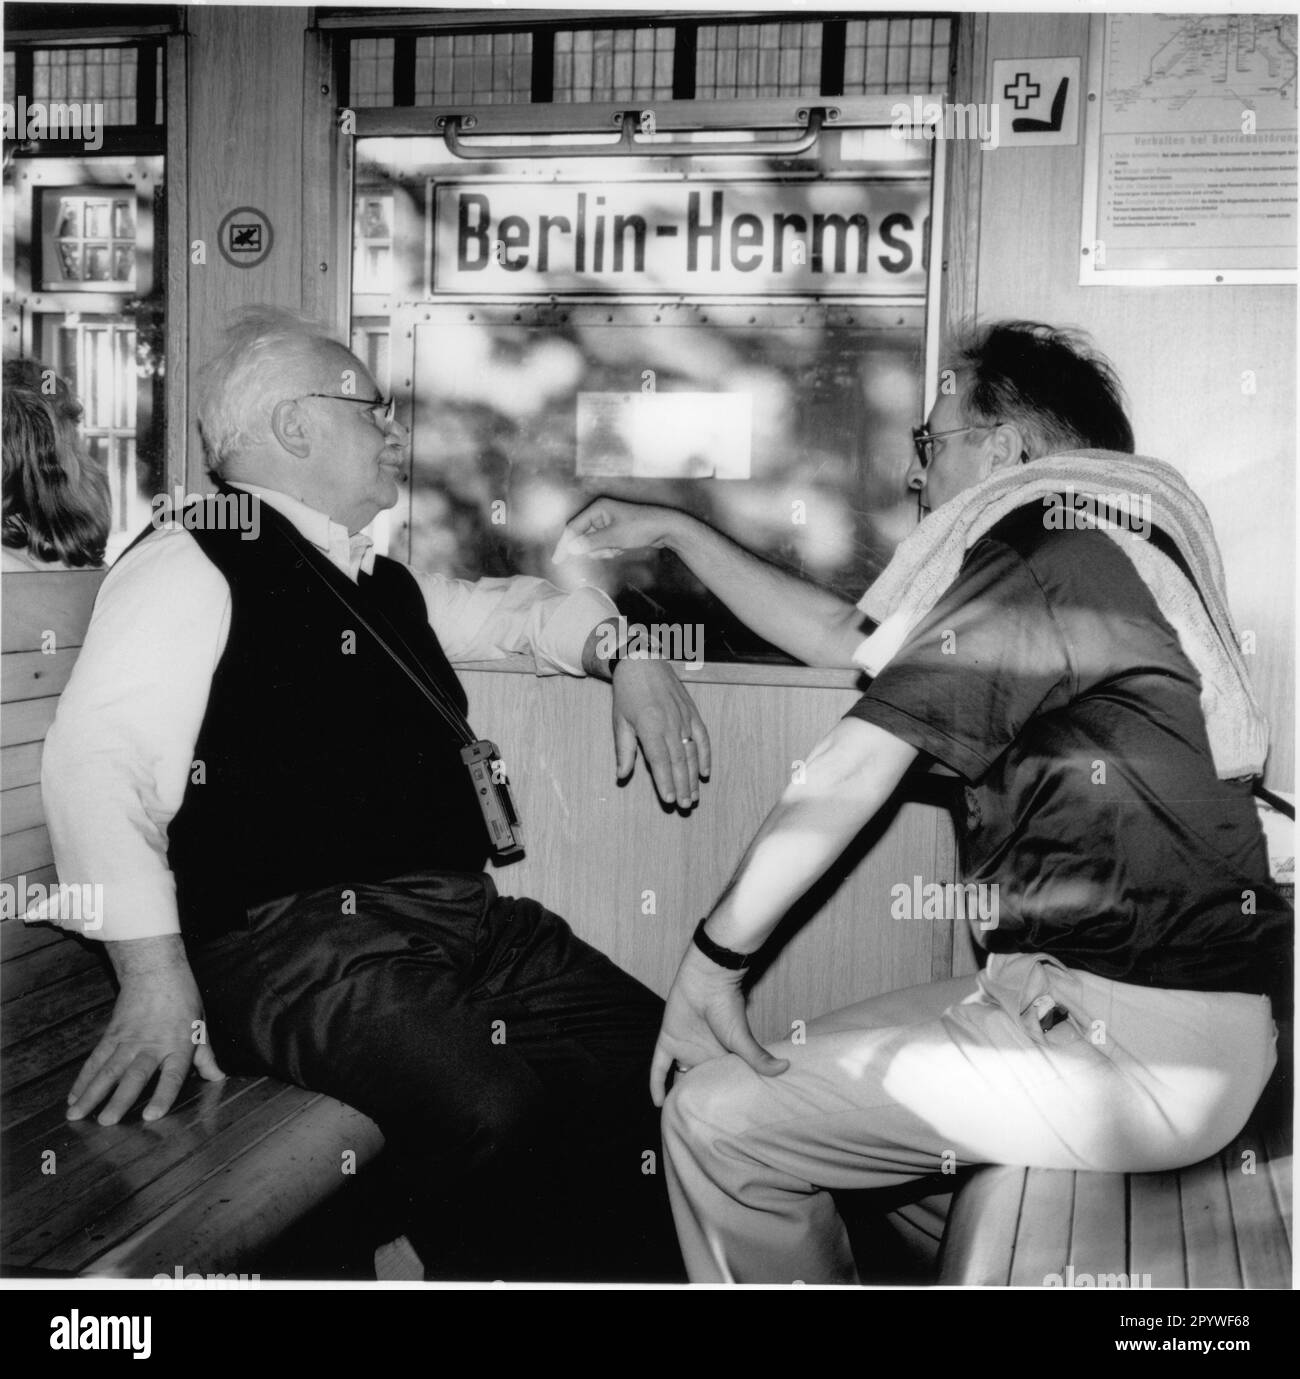 Berlin. Verkehr. Zwei Männer in der S-Bahn, Bahnhof Berlin-Hermsdorf. Schwarz-Weiß, 6 x 6 cm Negativ. Foto, 1992 Stockfoto